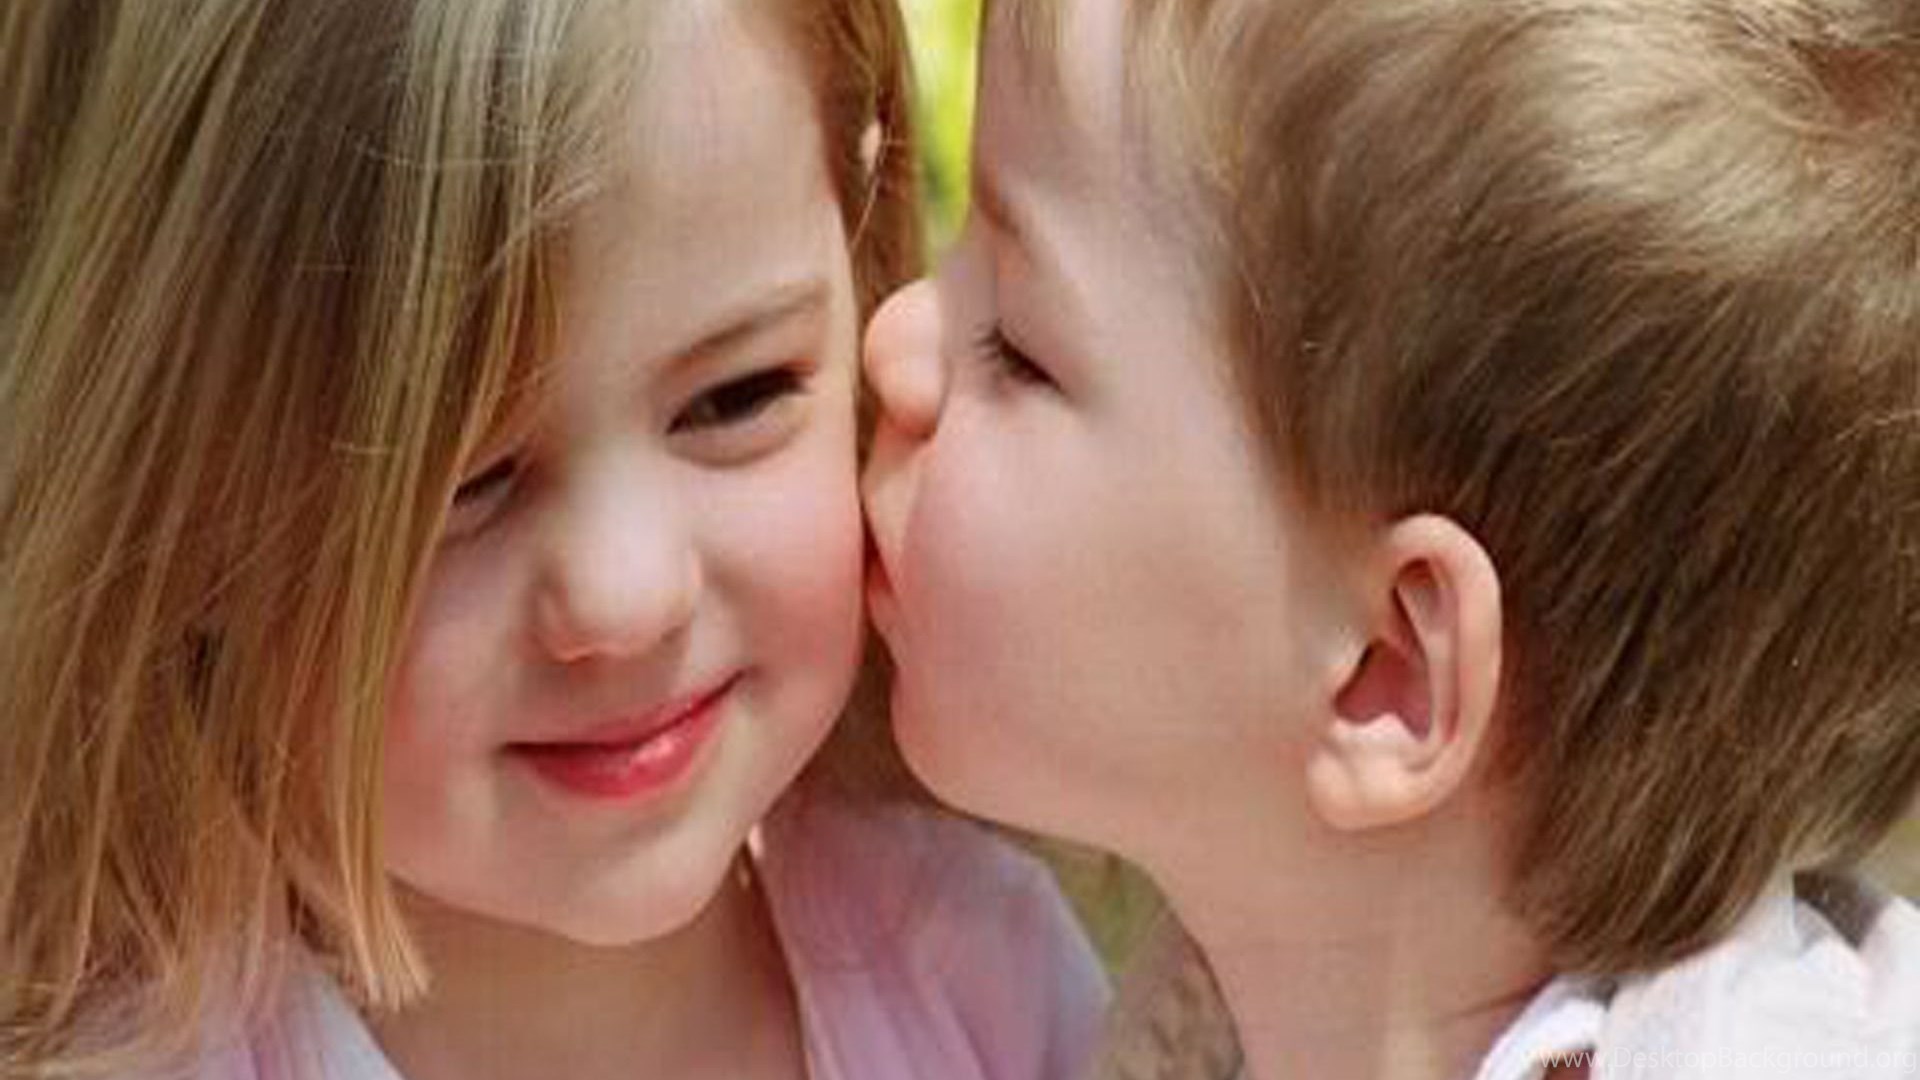 Поцелуй примирения. Детский поцелуй. Поцелуй в щечку дети. Любовь к ребенку. Детский поцелуй в щечку.